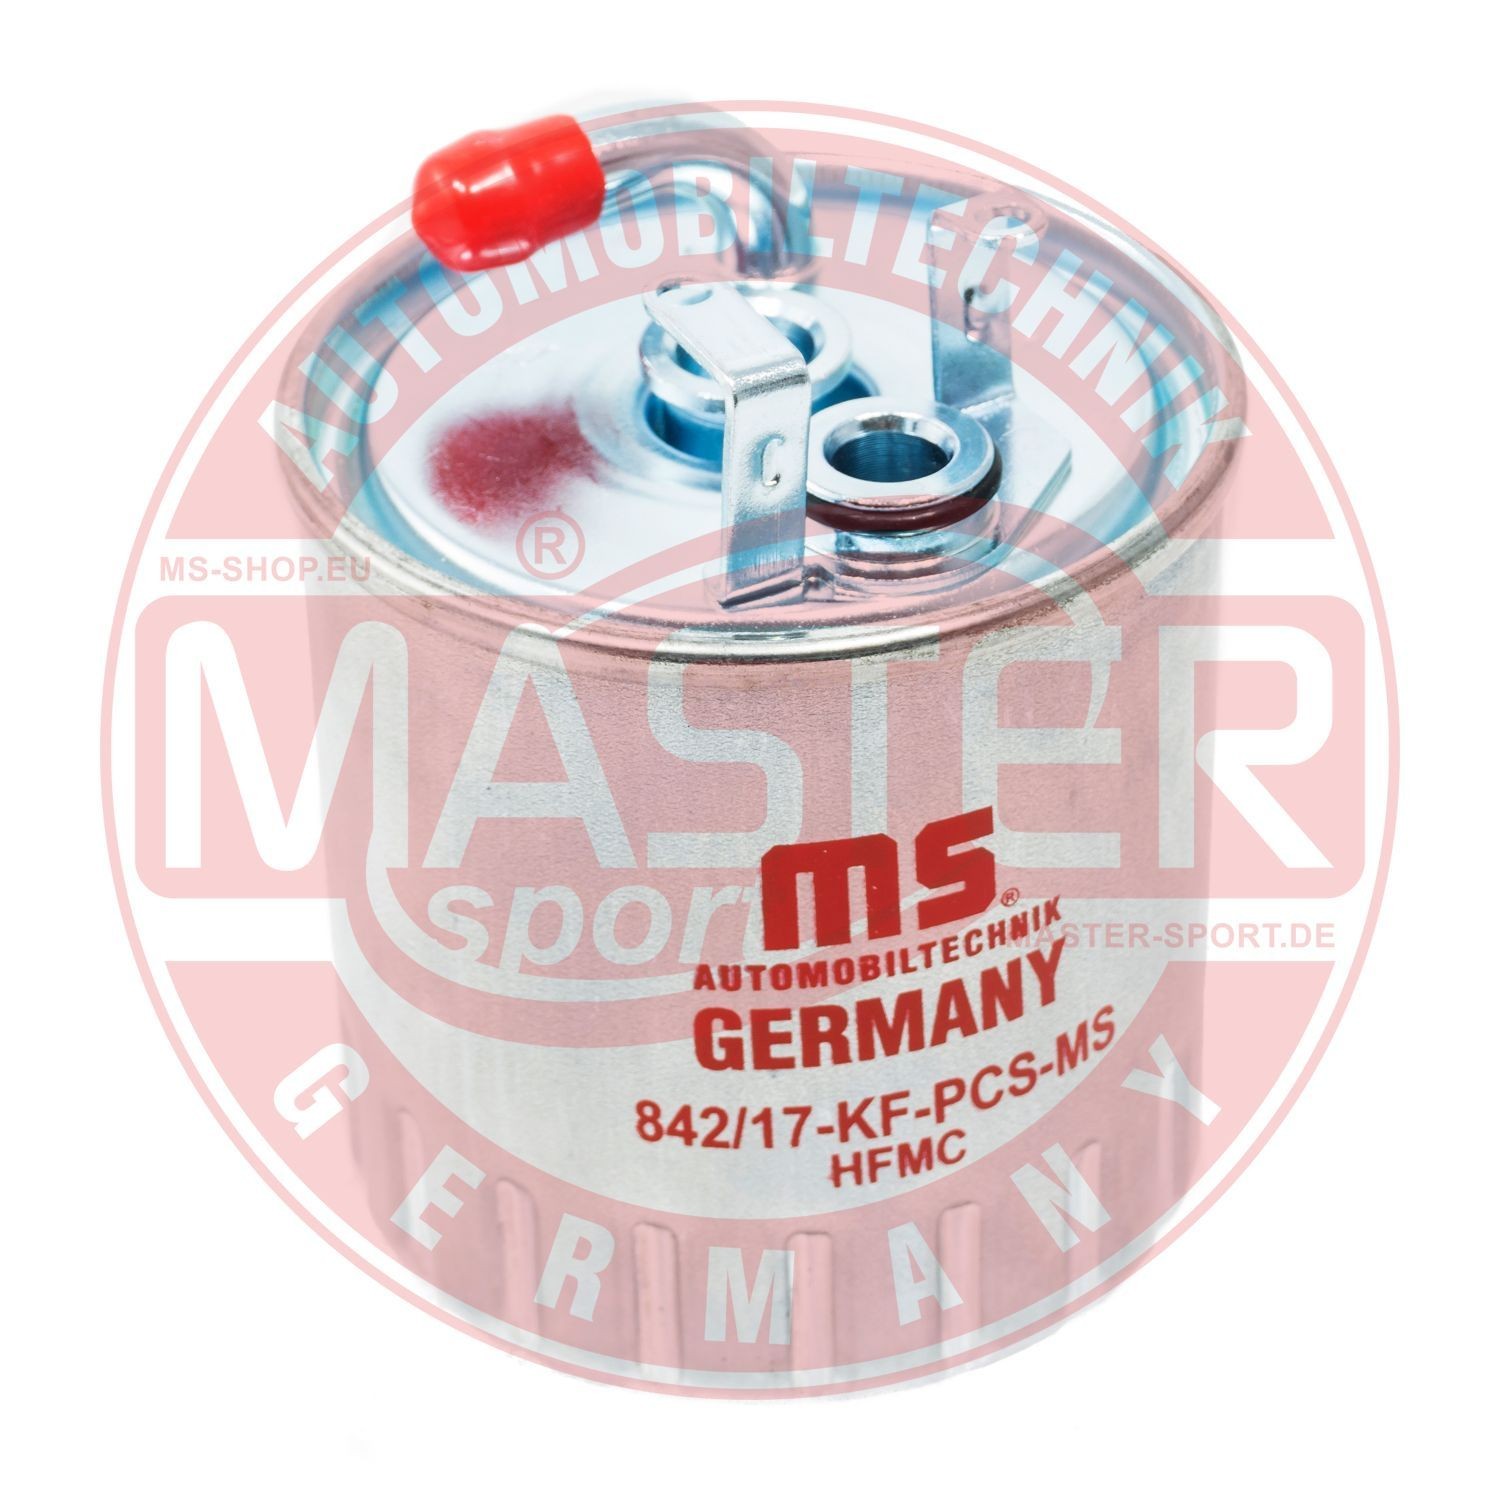 430842170 MASTER-SPORT 842/17-KF-PCS-MS Fuel filter 6110900852